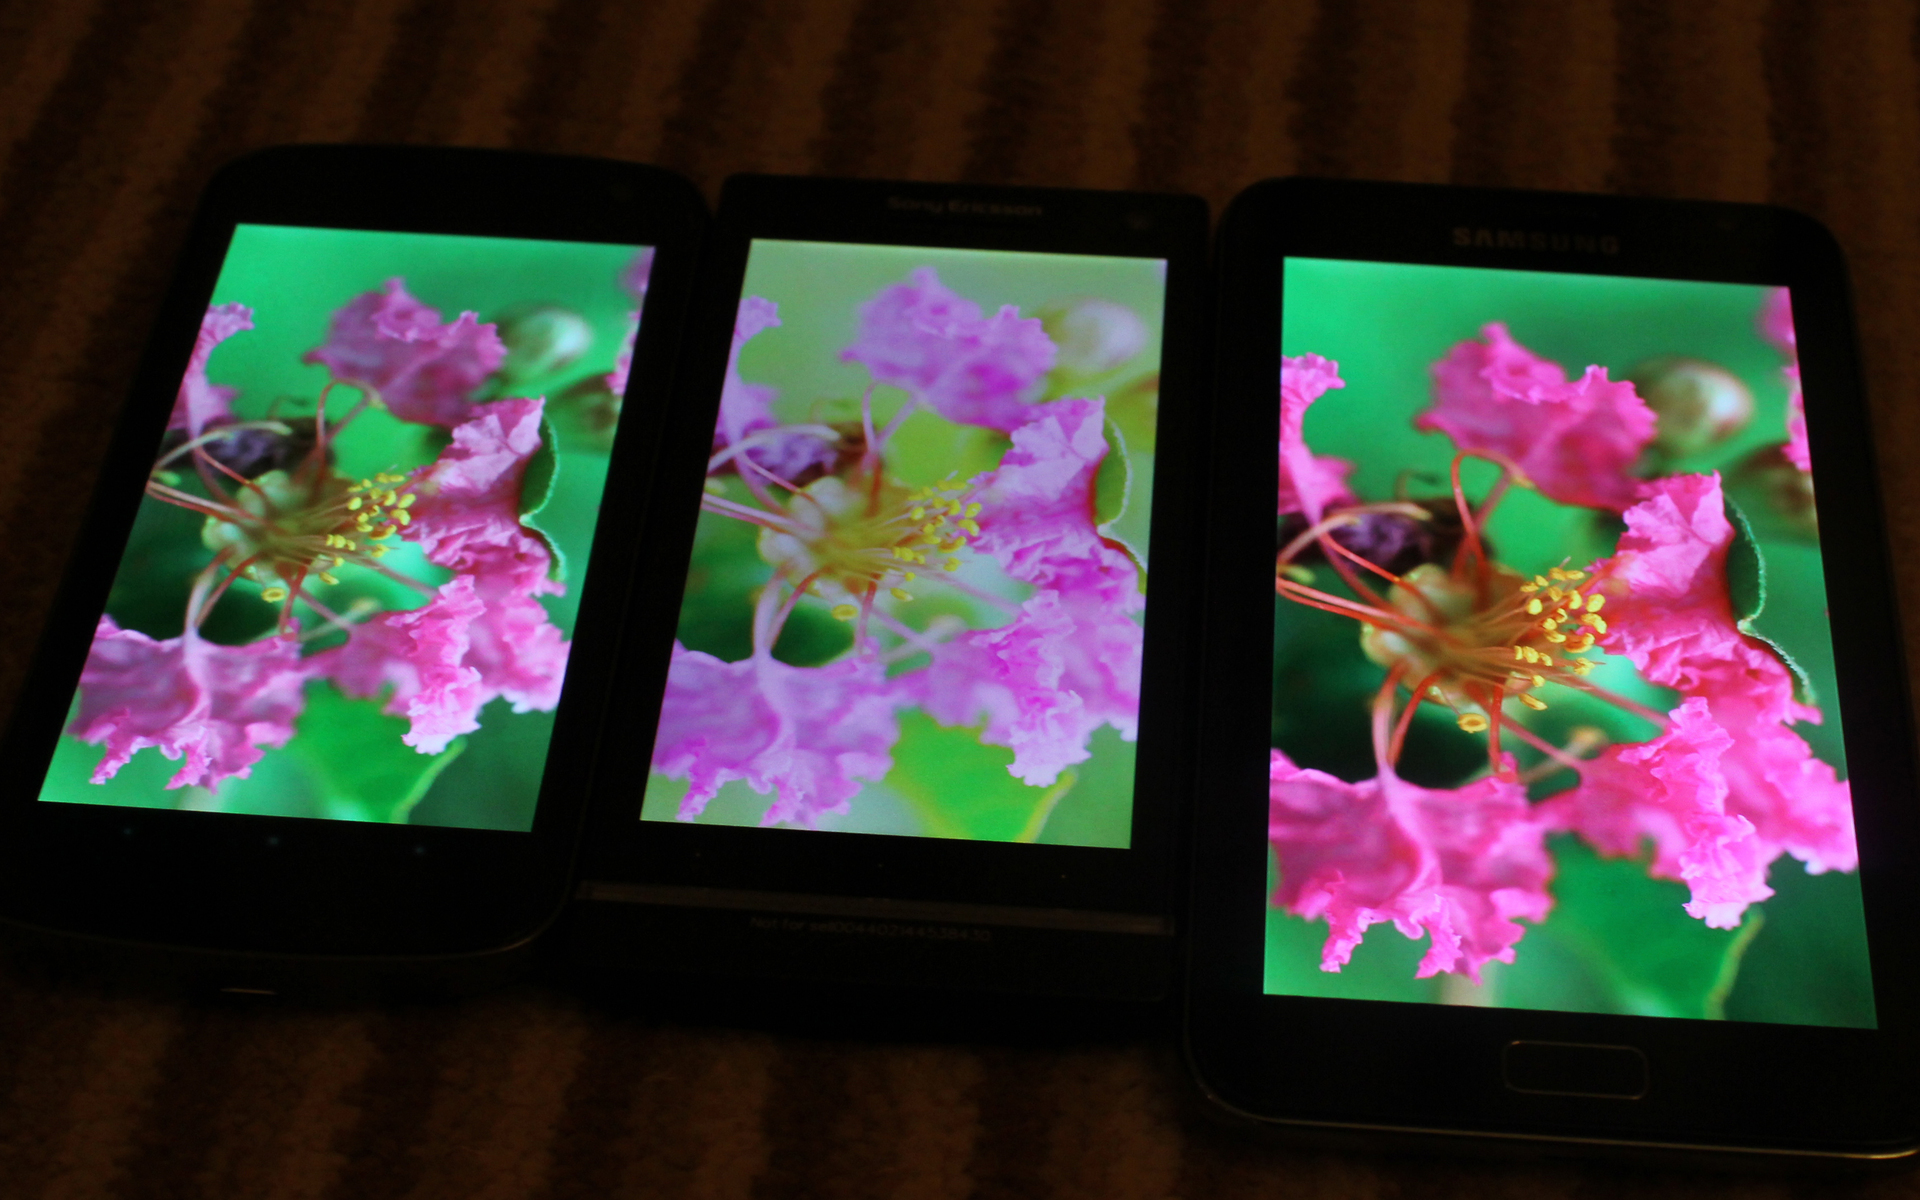 Xperia S, Galaxy Nexus, Galaxy Note